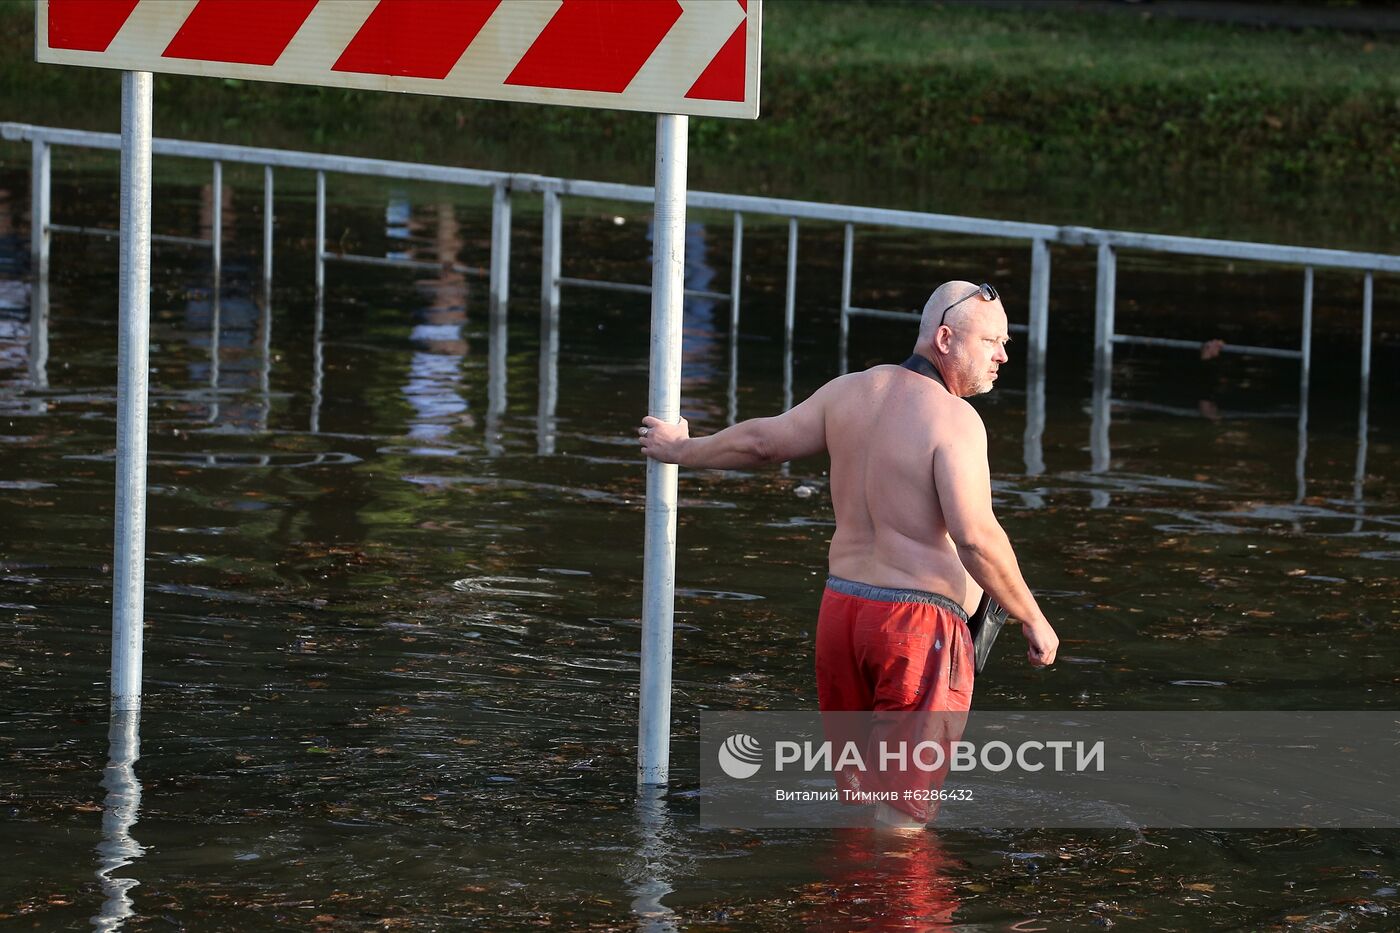 В центре Краснодара после мощного ливня утонул трамвай